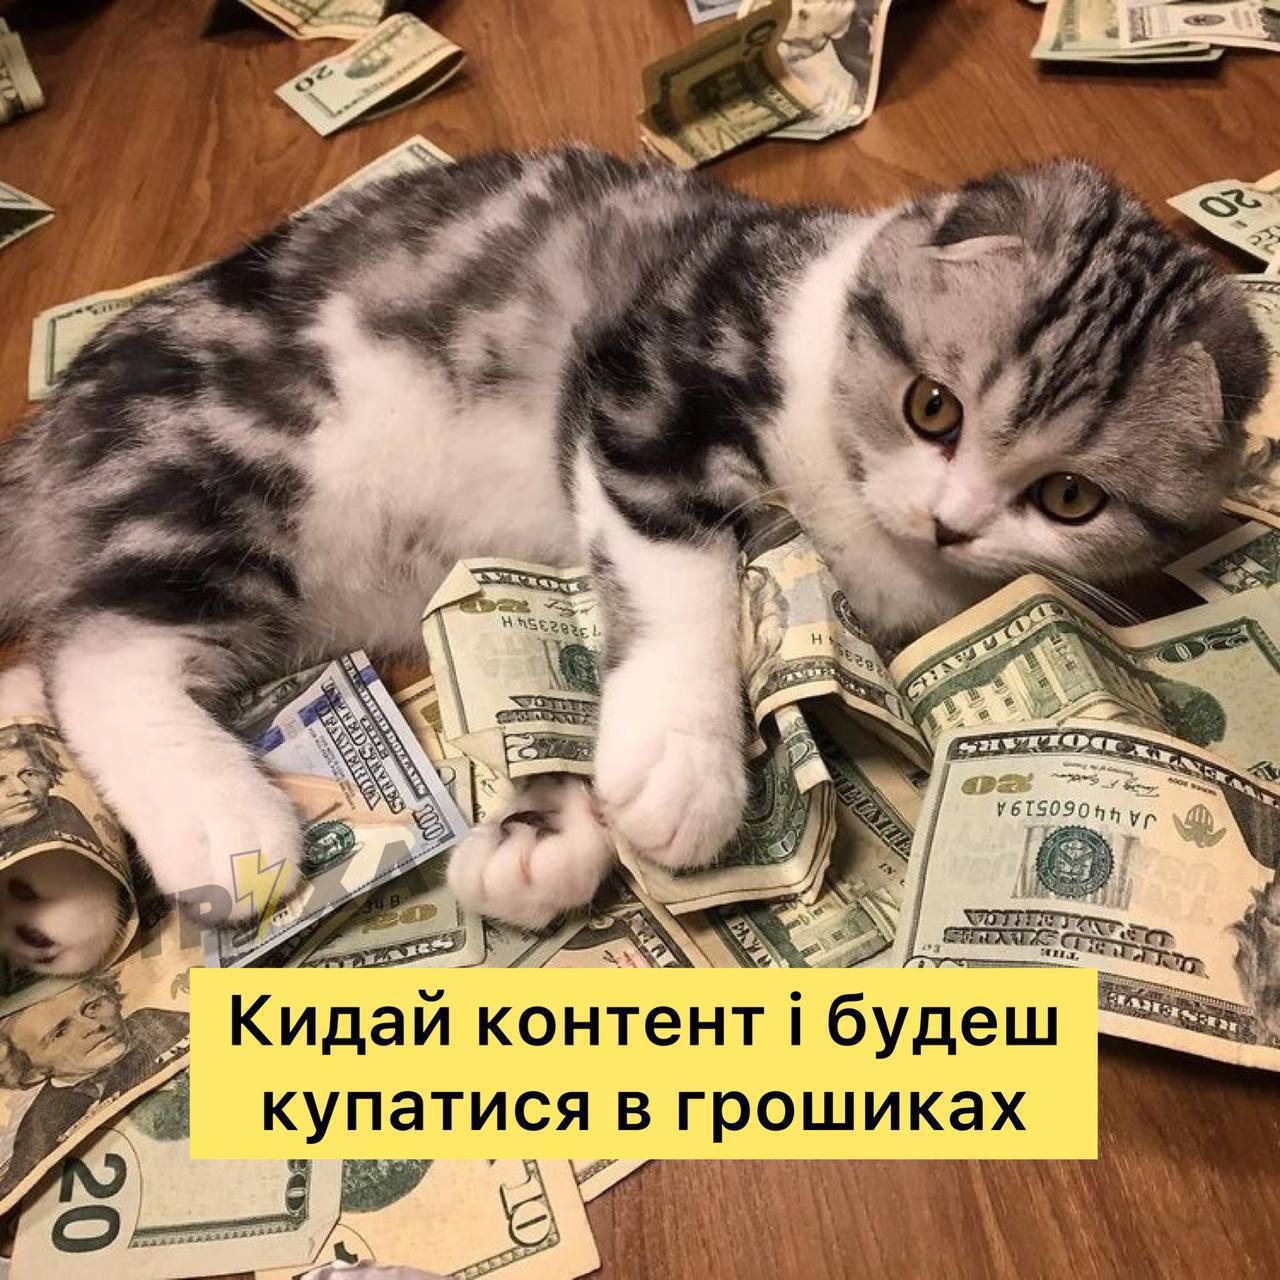 Casino cat official money cat fun. Котик с деньгами. Денежная кошка. Богатый кот. Милые кошечки и деньги.